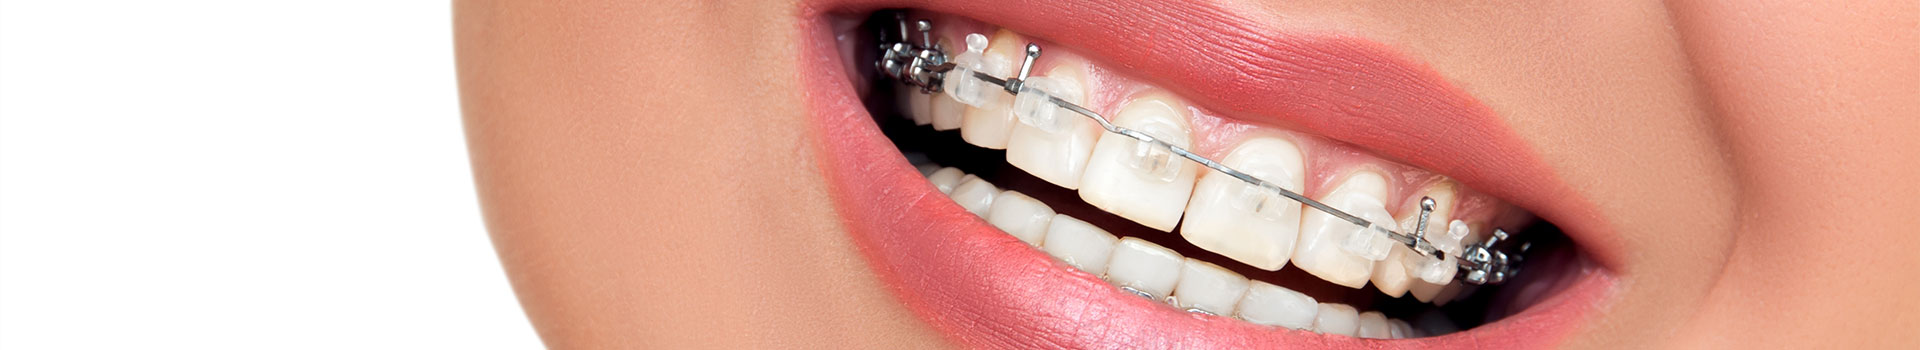  Orthodontics